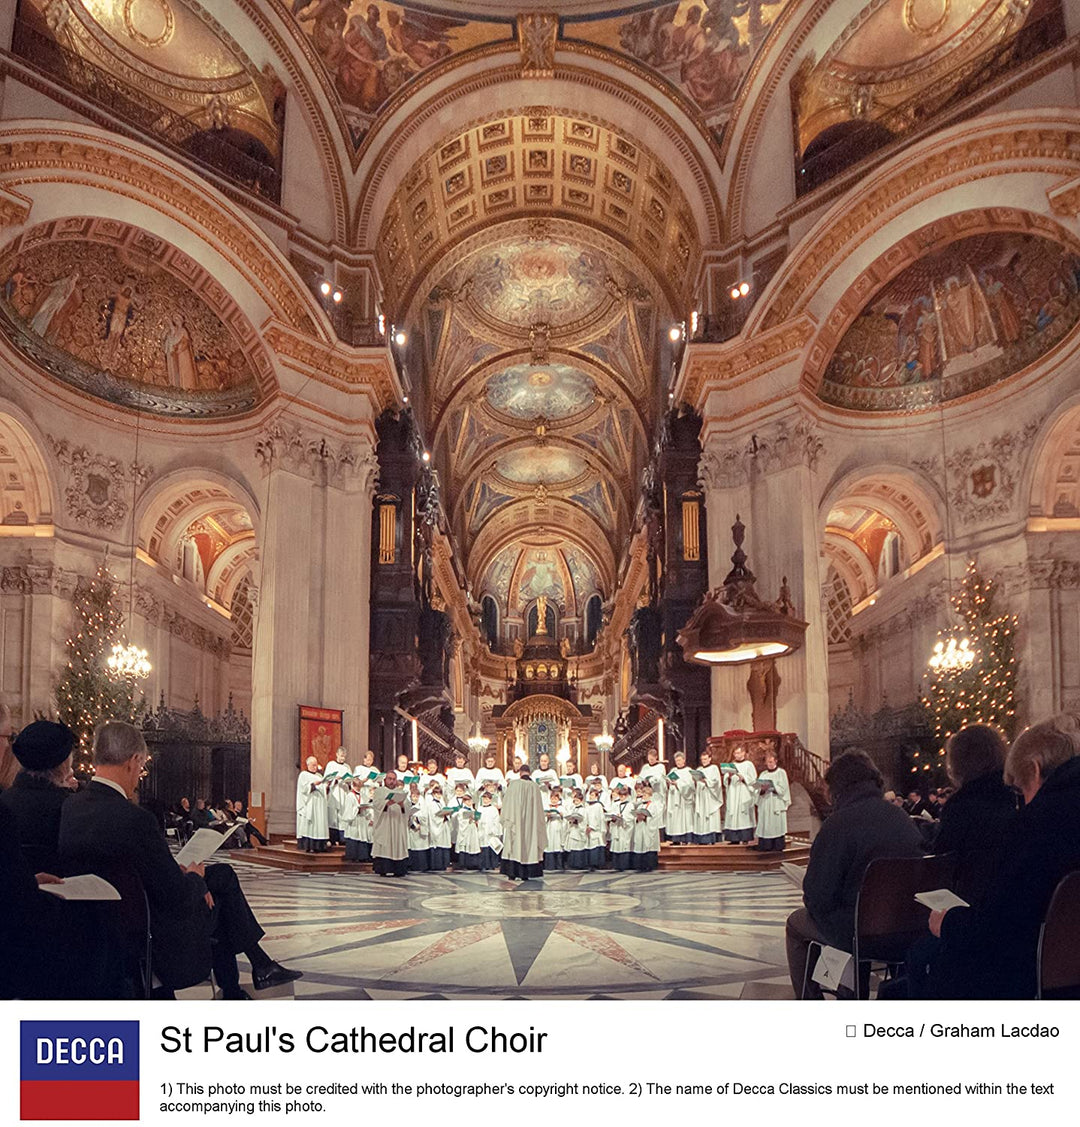 Chœur de la cathédrale Saint-Paul Andrew Carwood - Chants avec le chœur de la cathédrale Saint-Paul